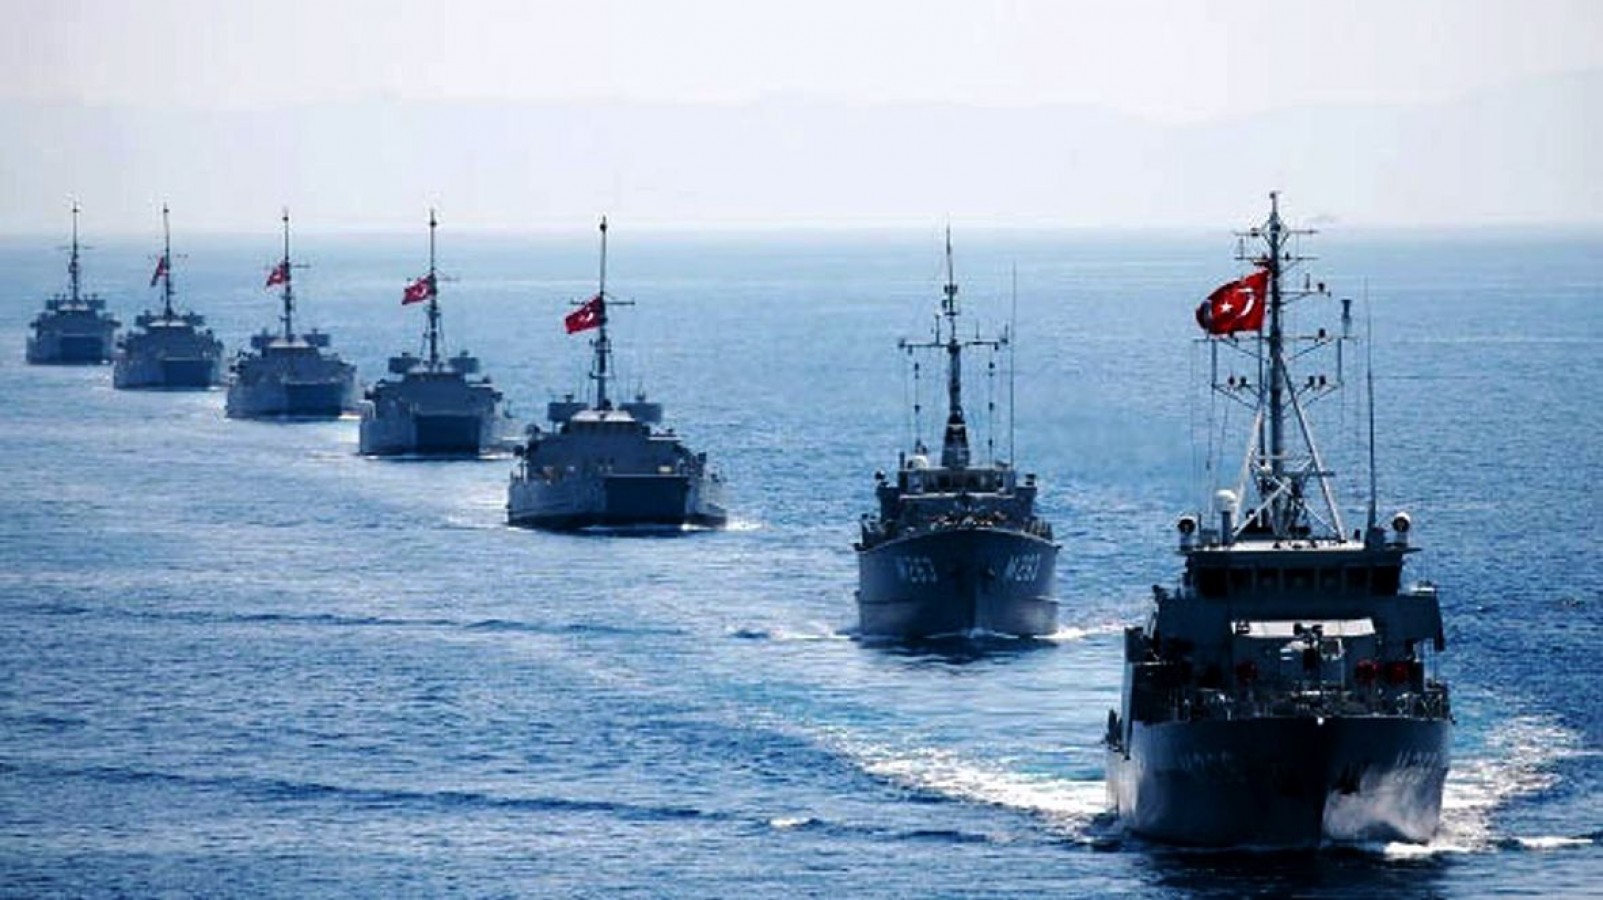 100 gemimiz İstanbul Boğazı'na iniyor;